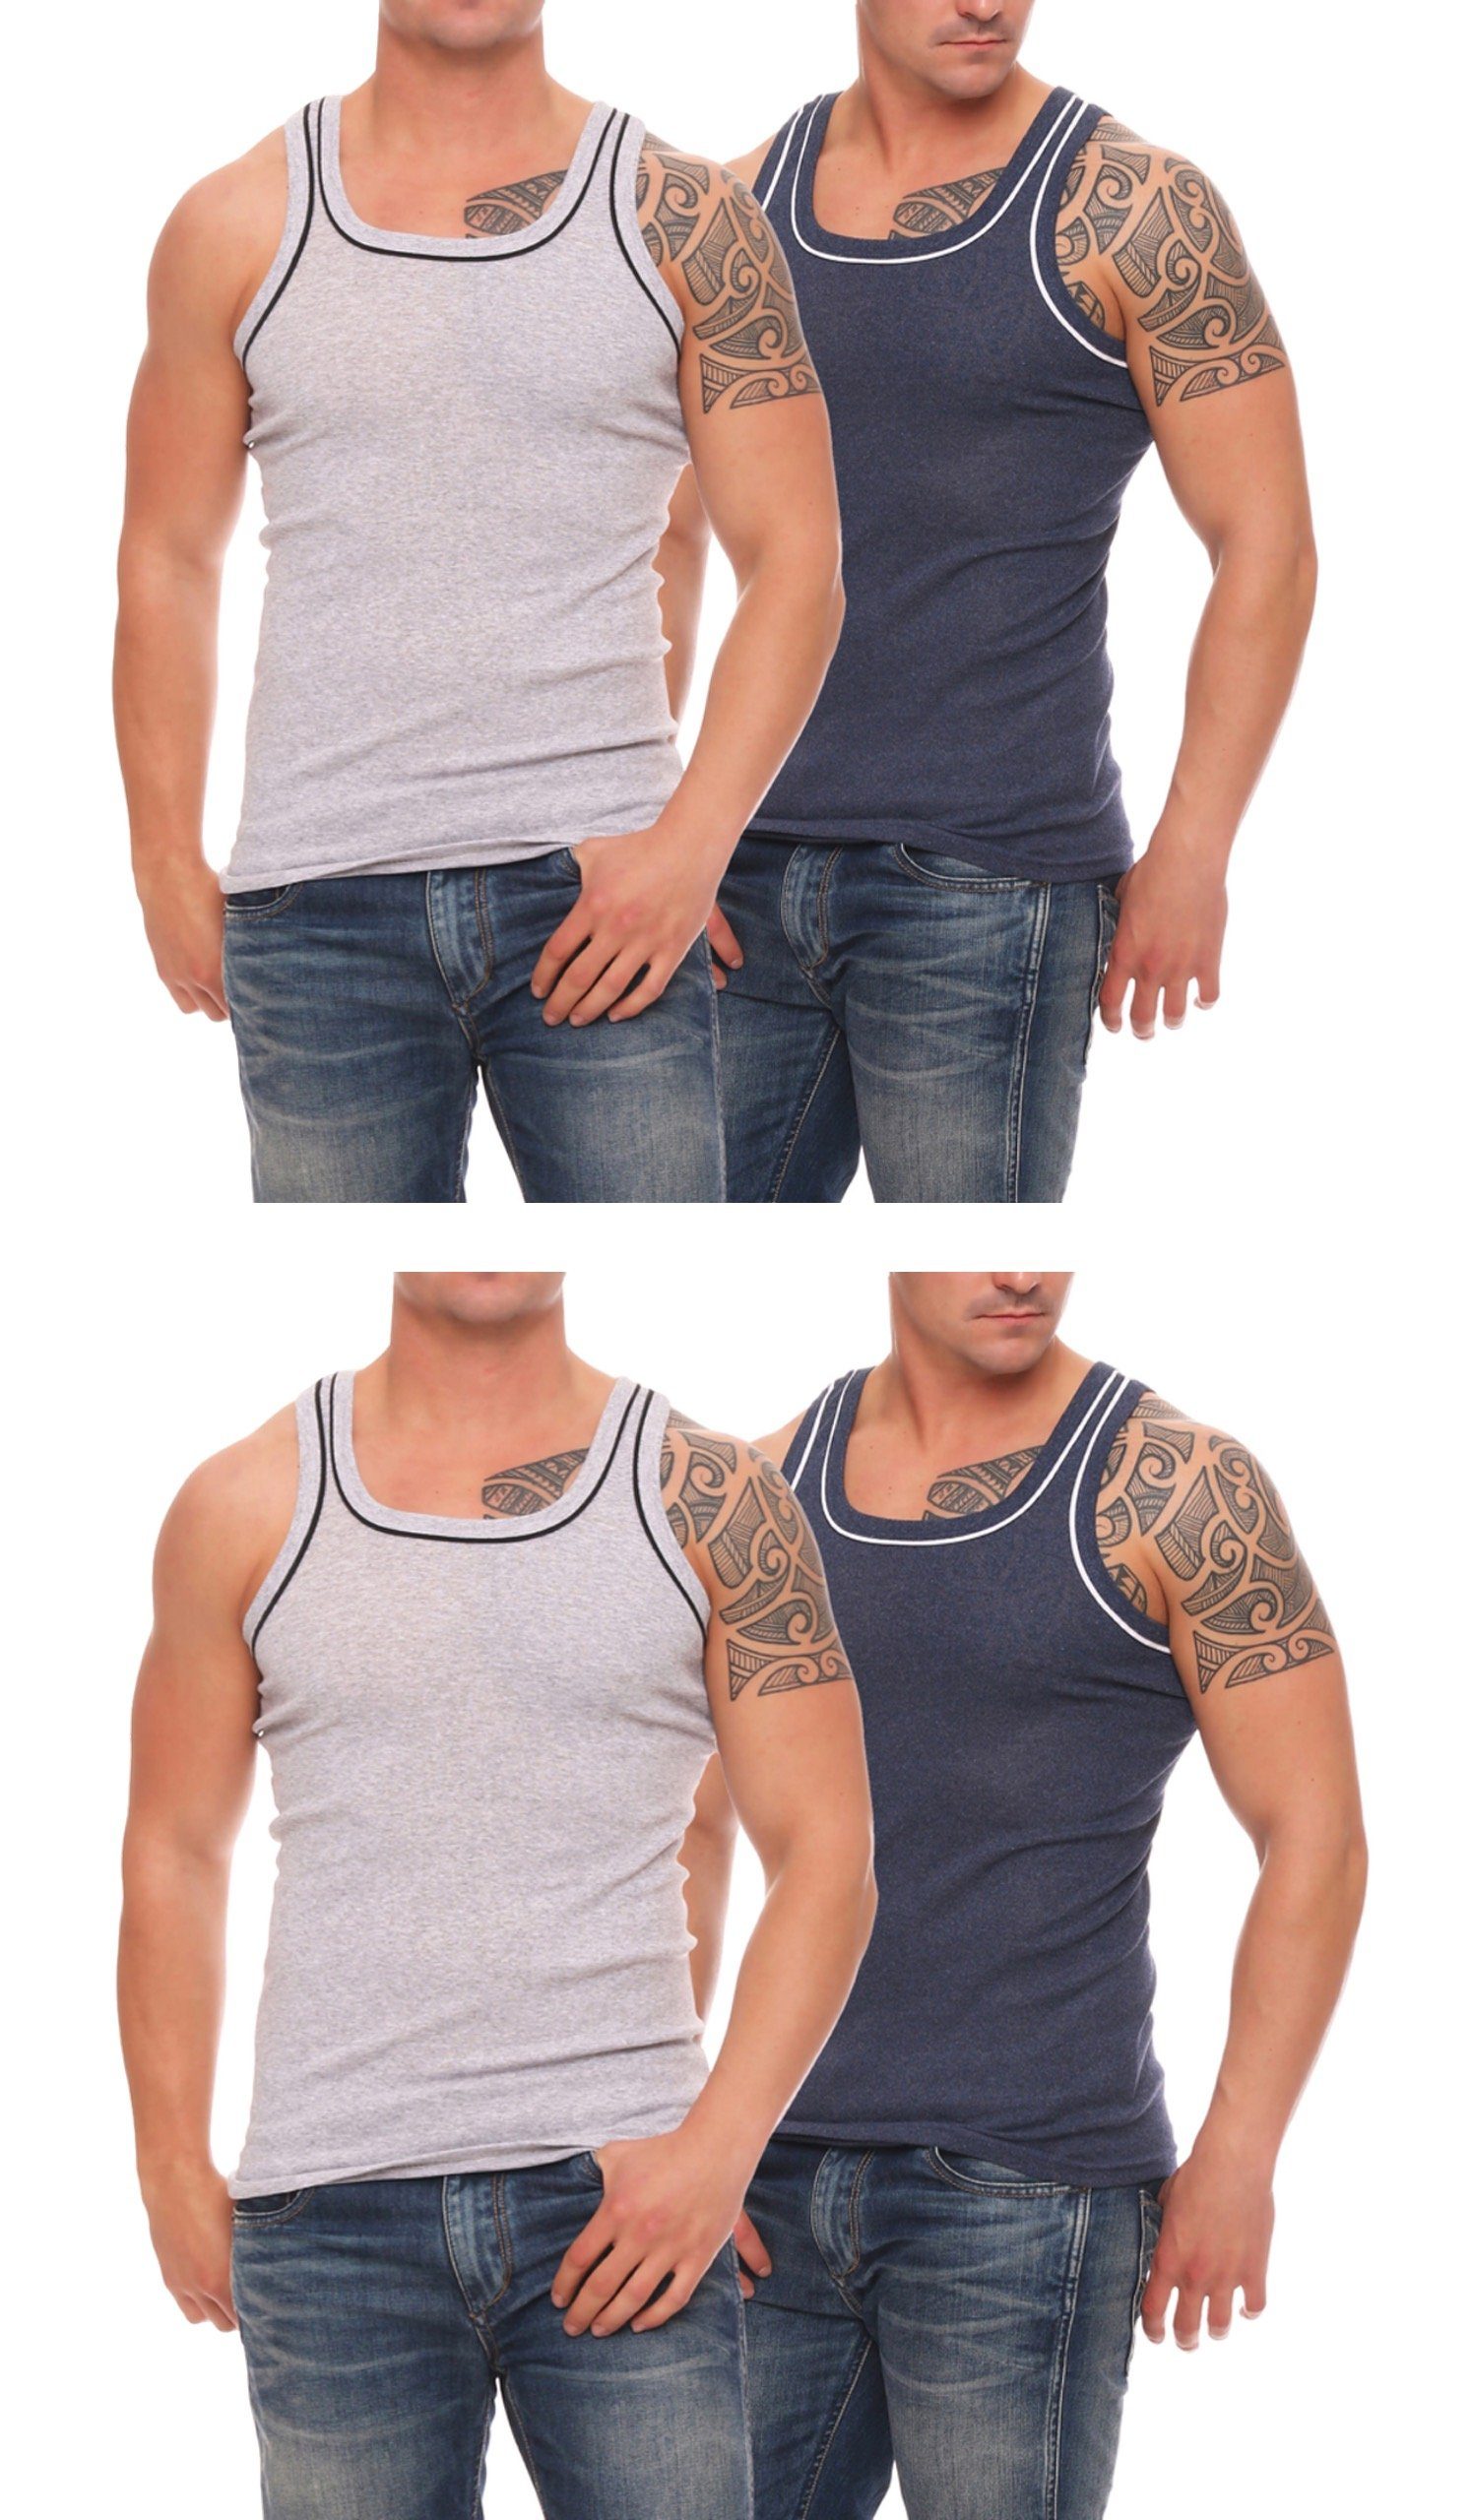 Cocain underwear Unterhemd Herren Unterhemden Vollachsel Achselhemden (4-St) produziert in Europa 4x dunkelblau/grau